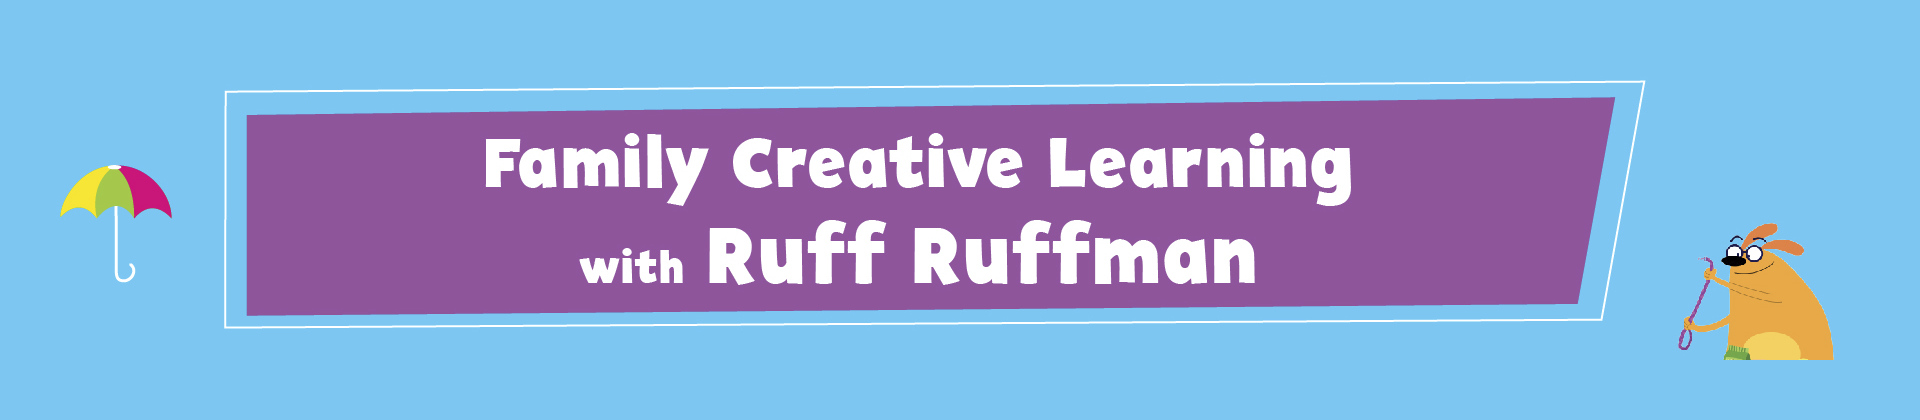 family creative learning ruff ruffman